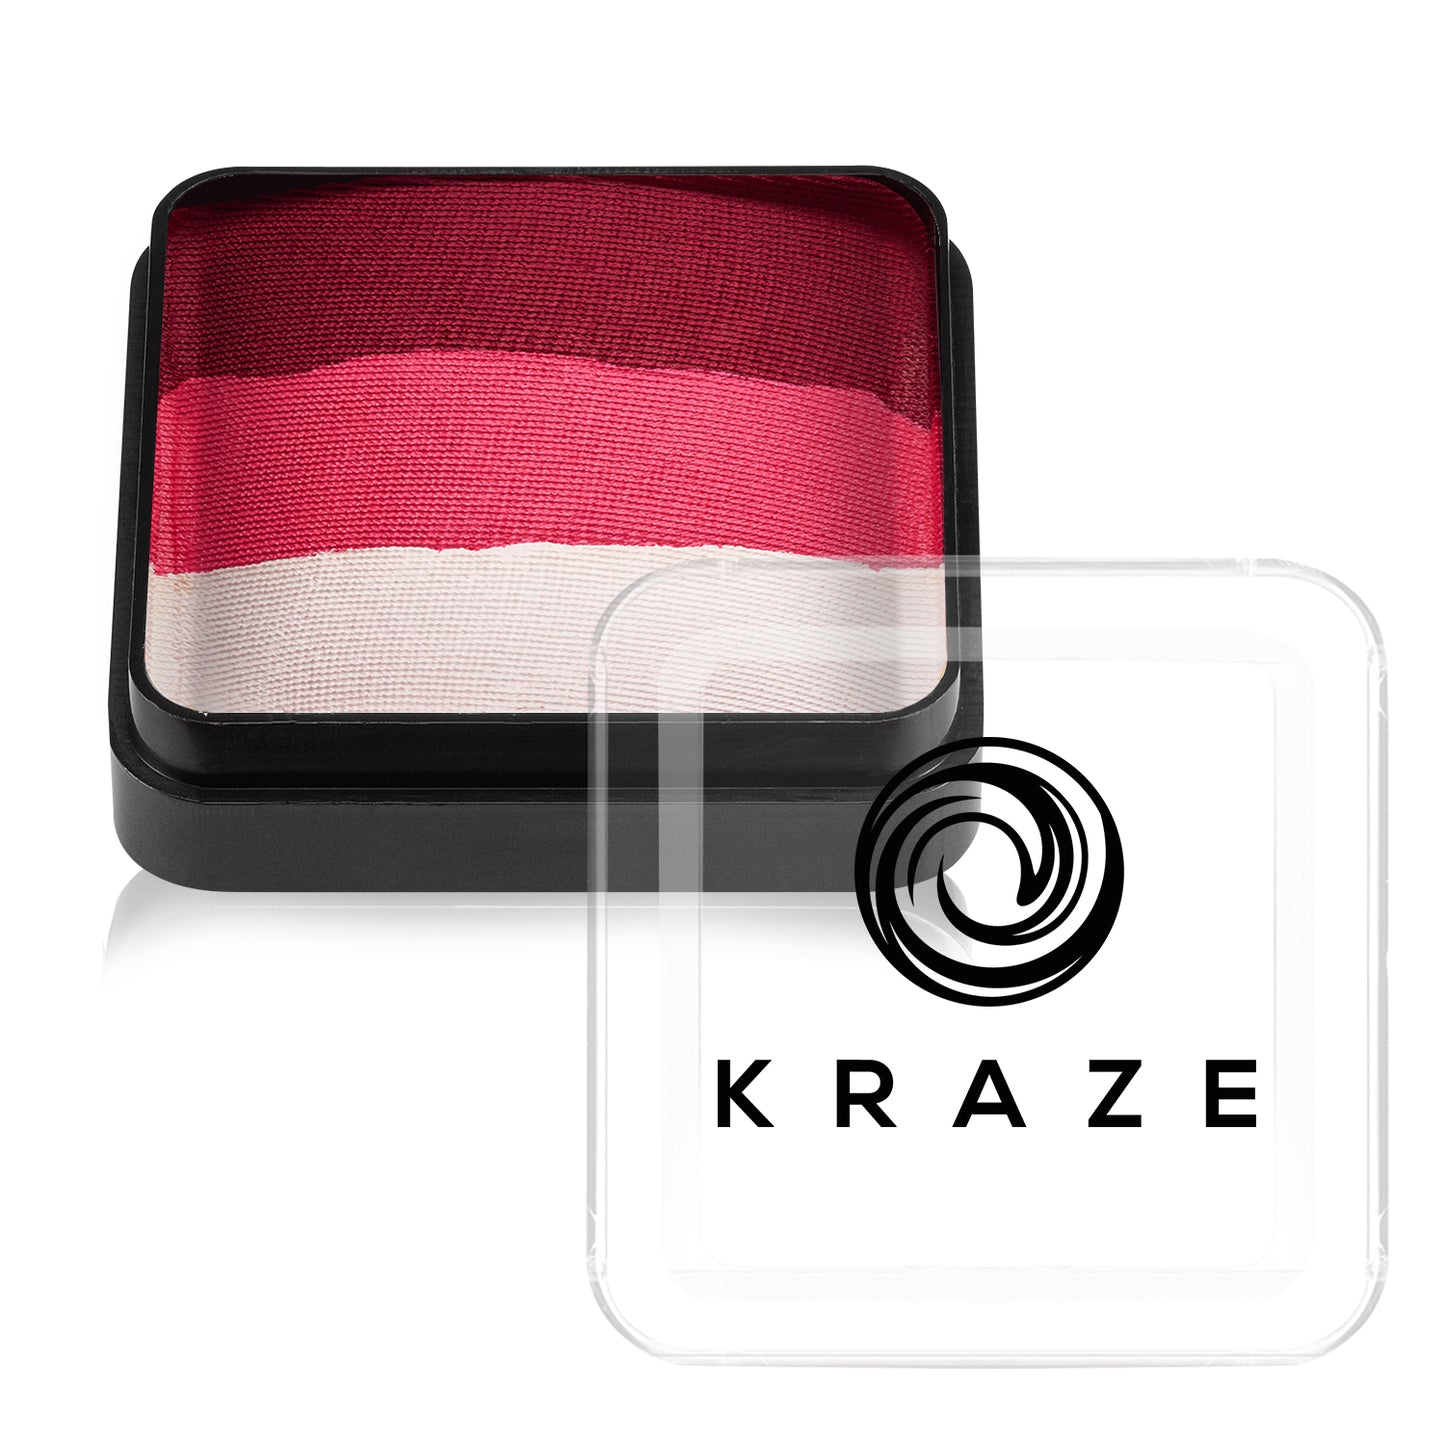 Kraze FX Domed Square Split Cake - Bloodberry (25 gm)